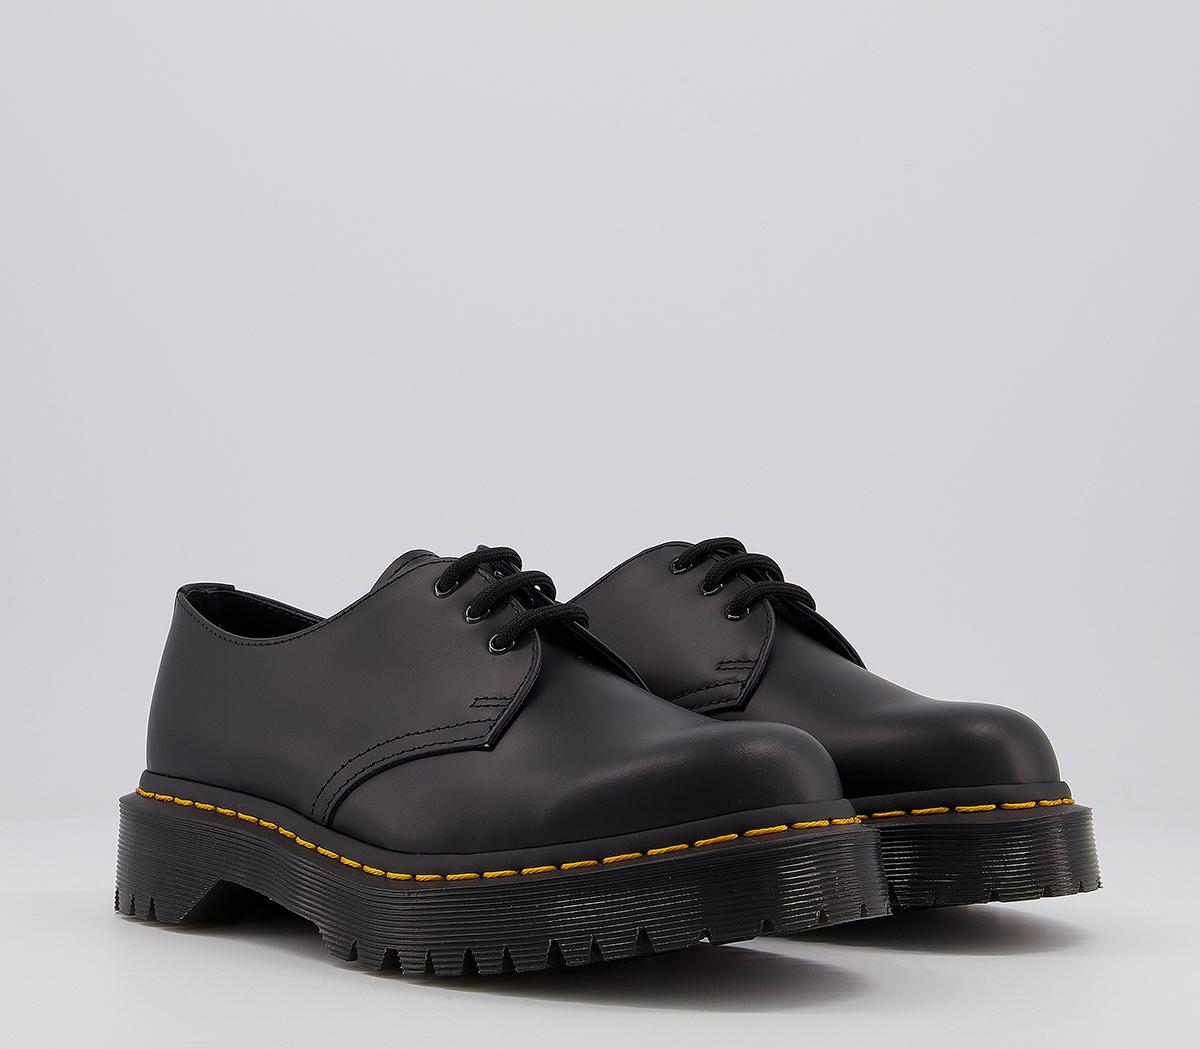 Dr. Martens Bex Shoes Black - Flat Shoes for Women